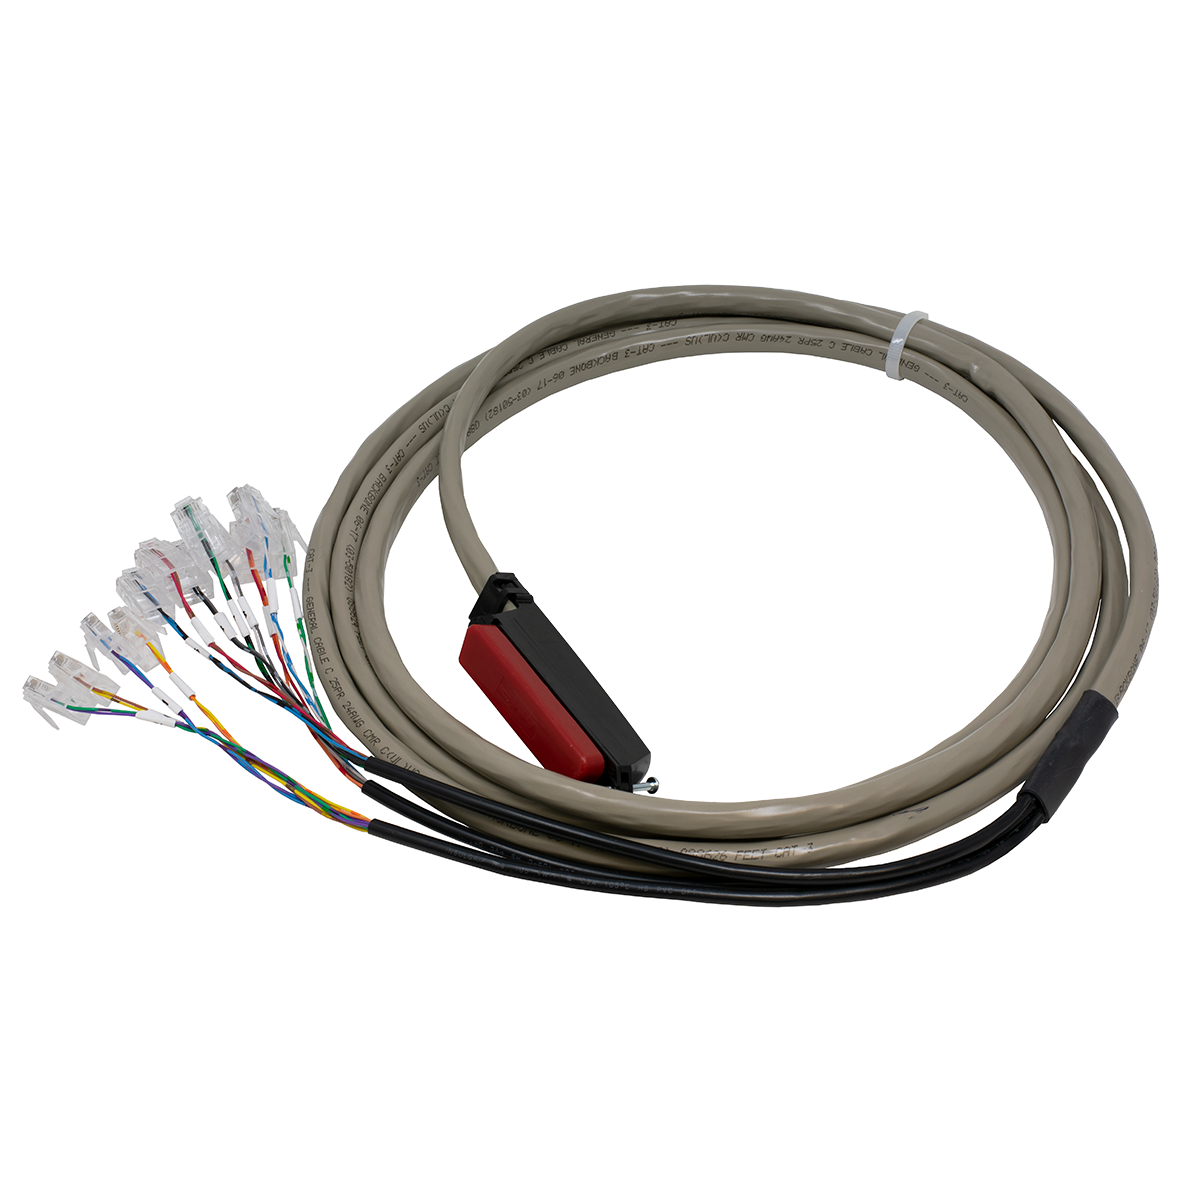 QWIK 10' Shoretel SG 30/50/90 Cable